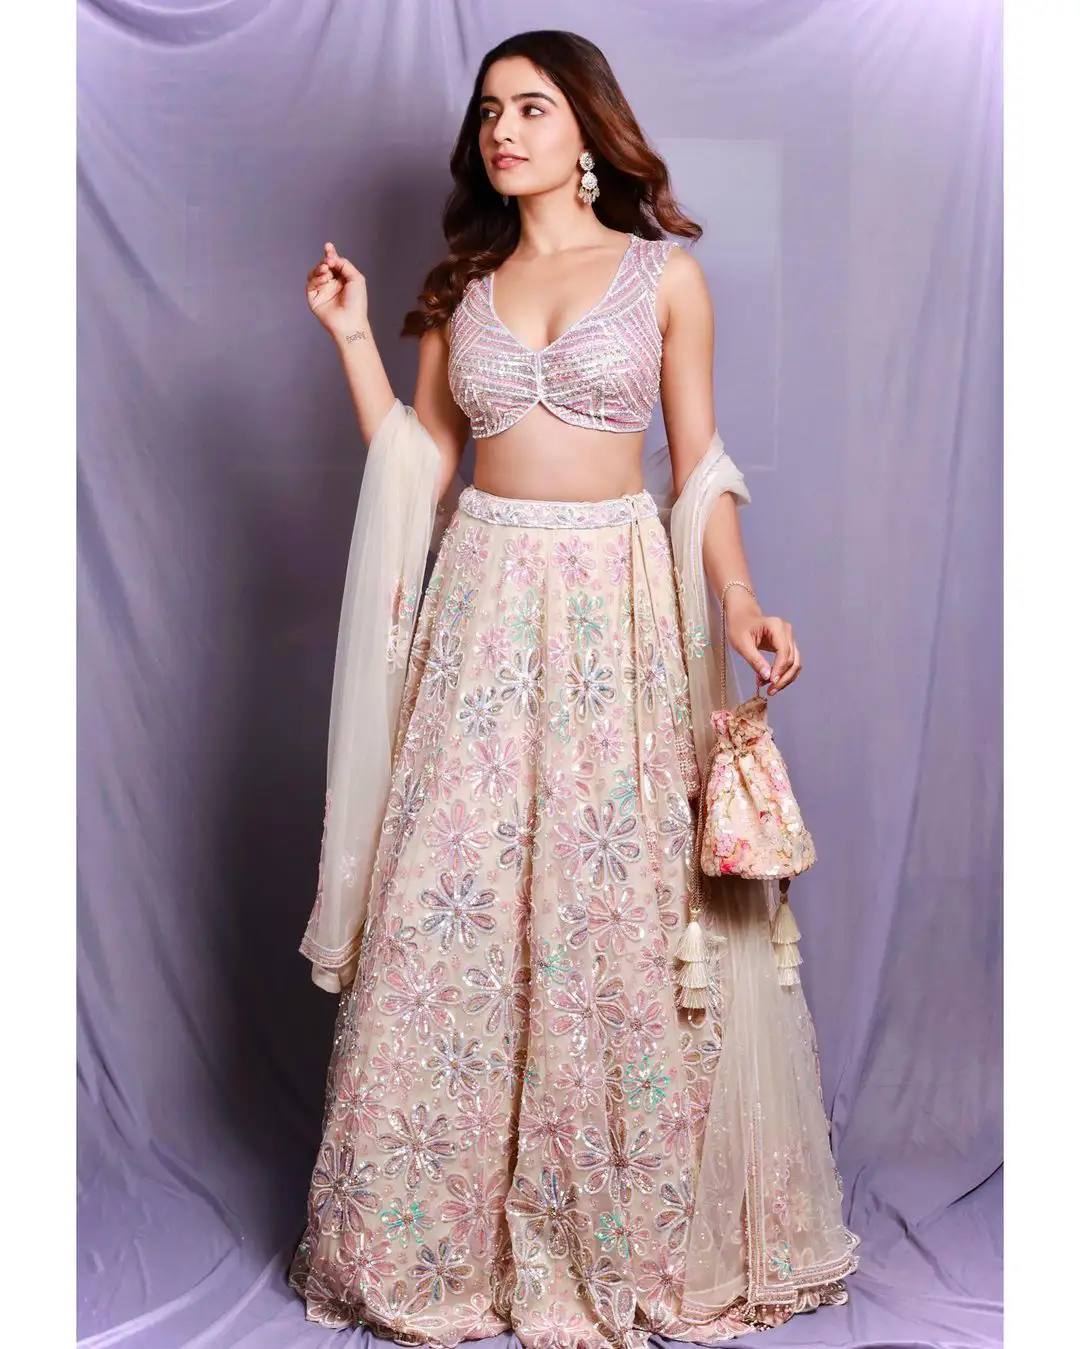 Rukshar Dhillon latest photoshoot in rose colour dress